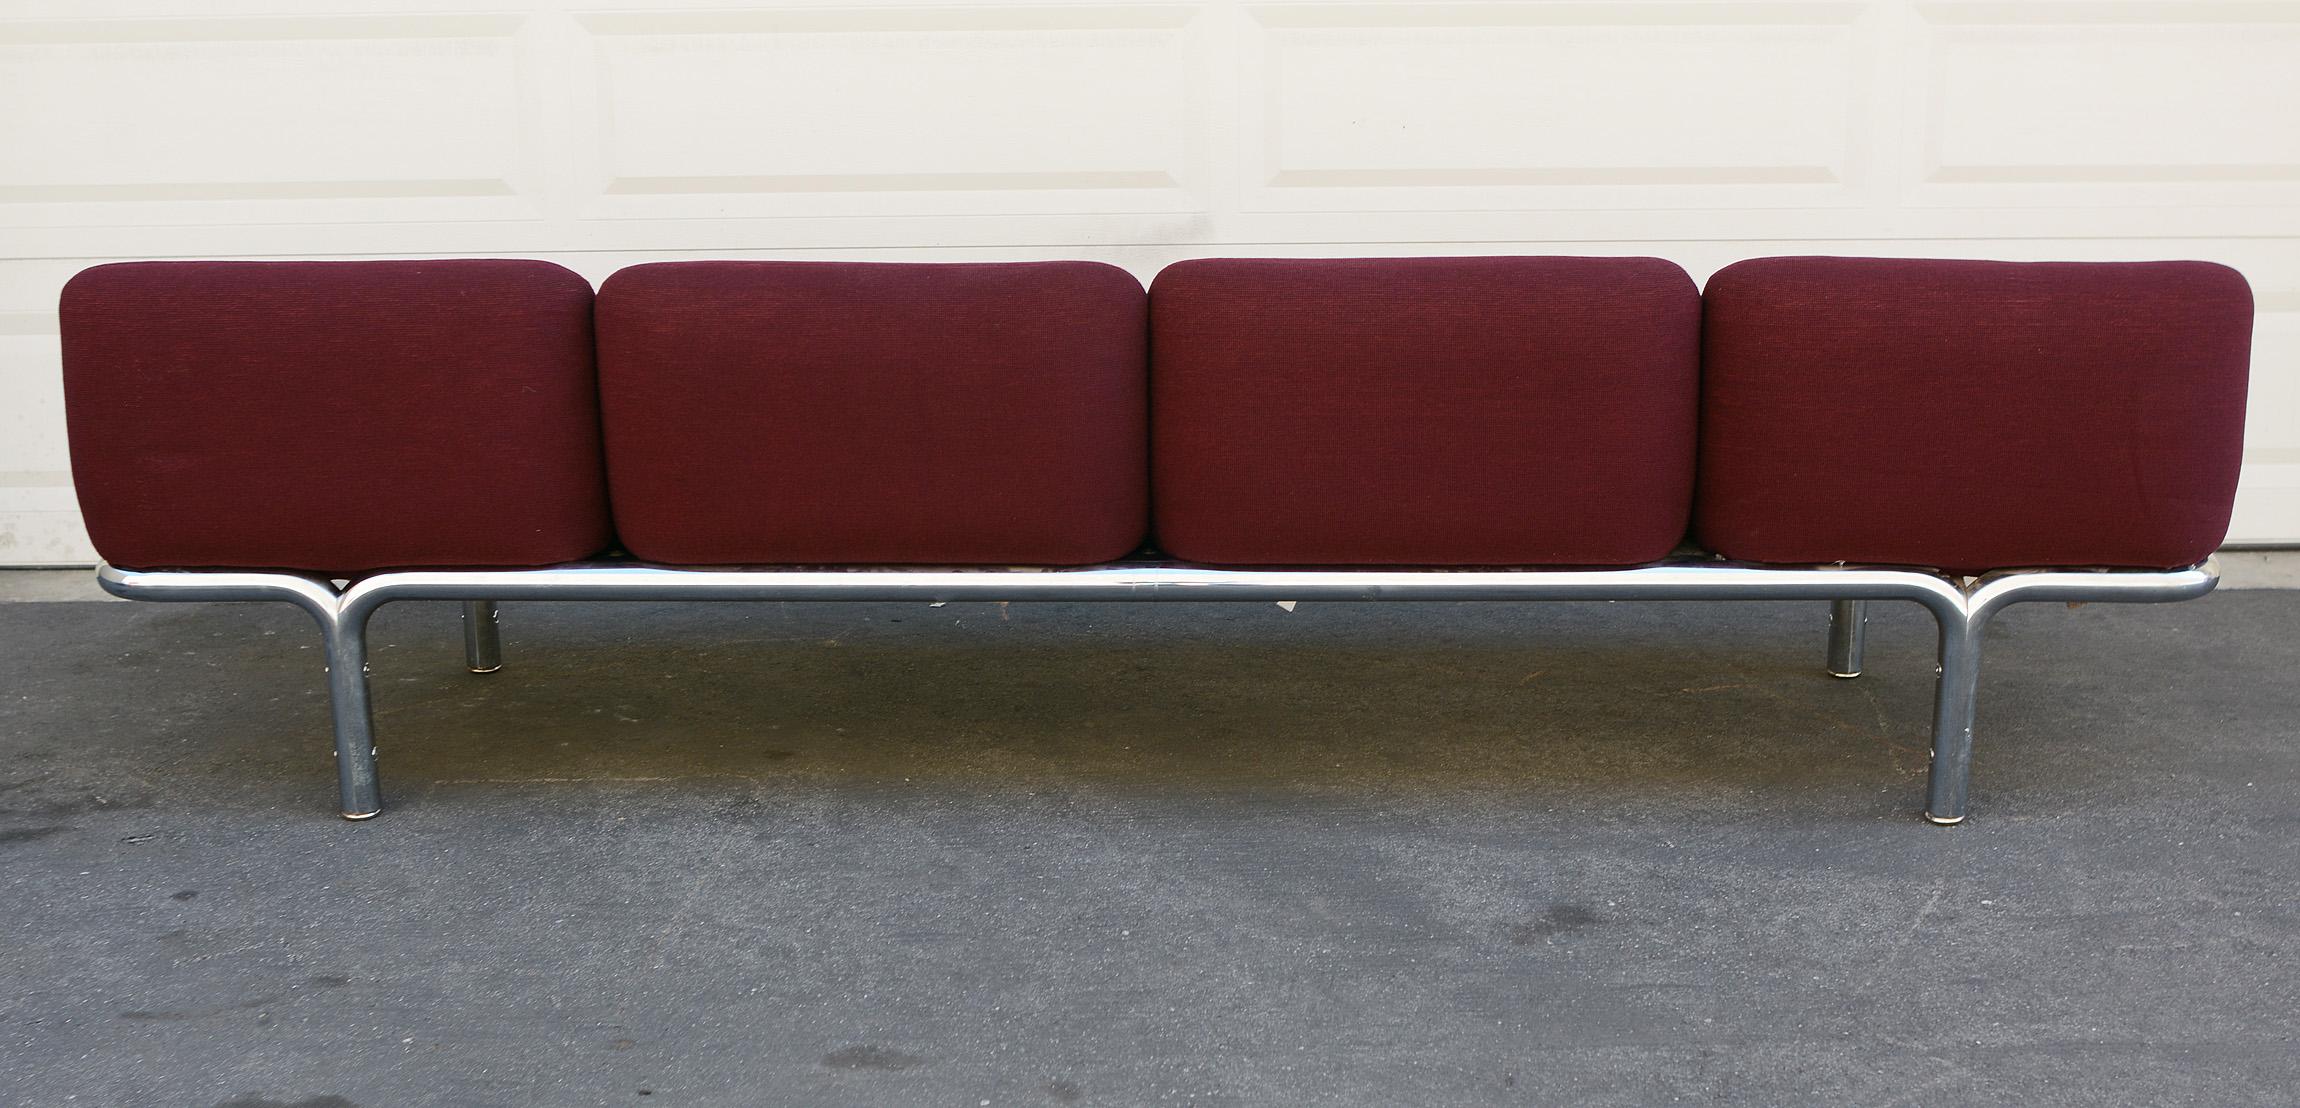 20th Century Four-Seat Chrome Tubular Sofa by Brian Kane for Metropolitan